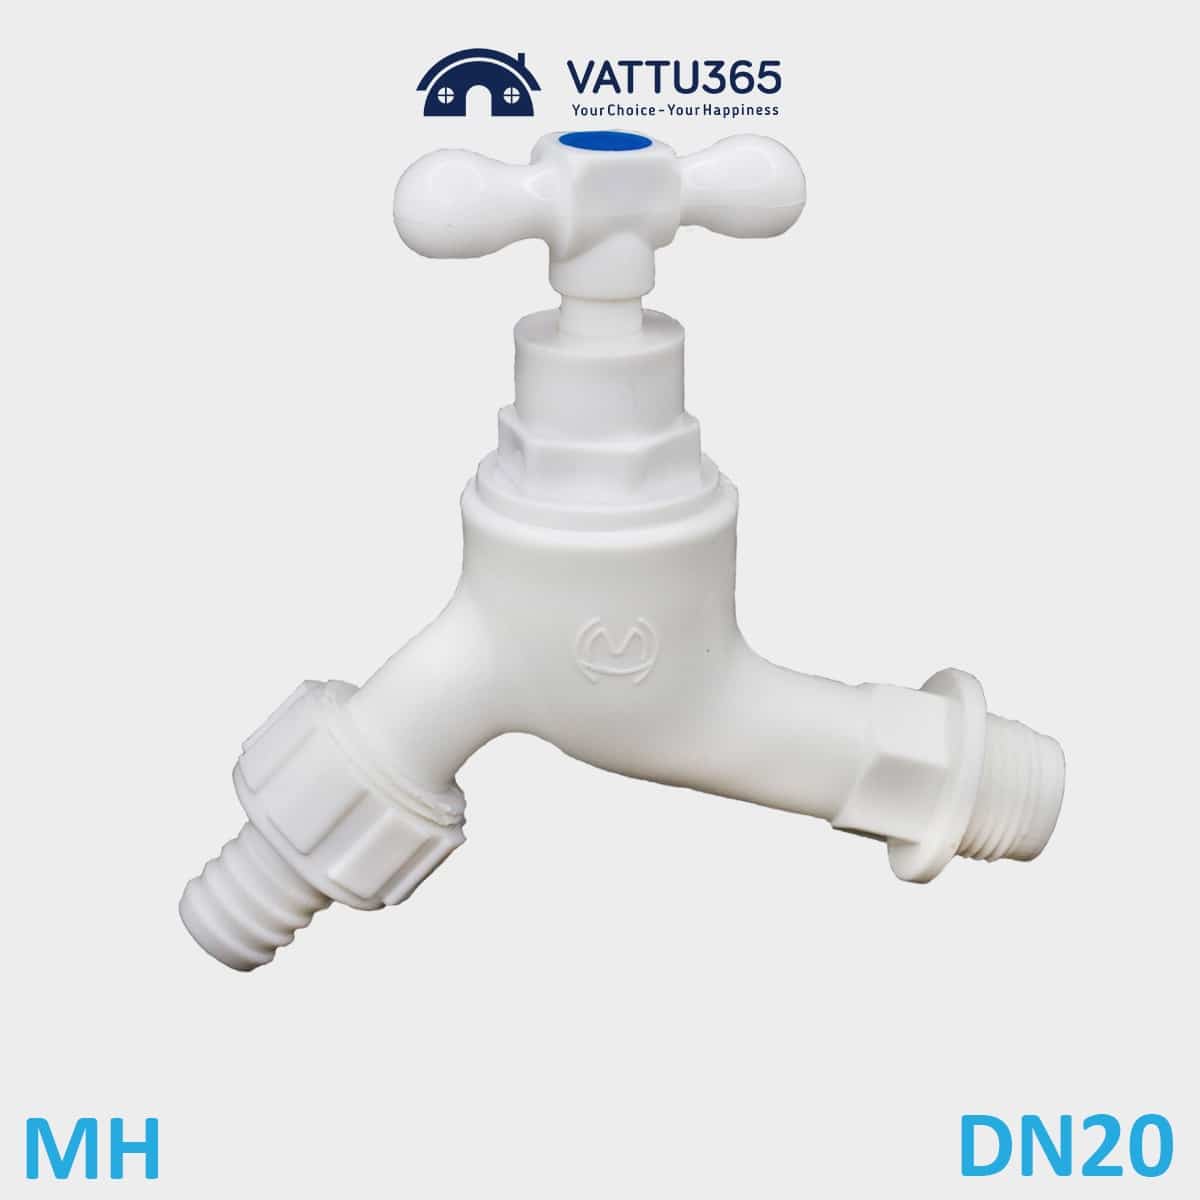 Vòi nước nhựa tay xoay nối ống mềm nhựa MH DN20 Phi 27